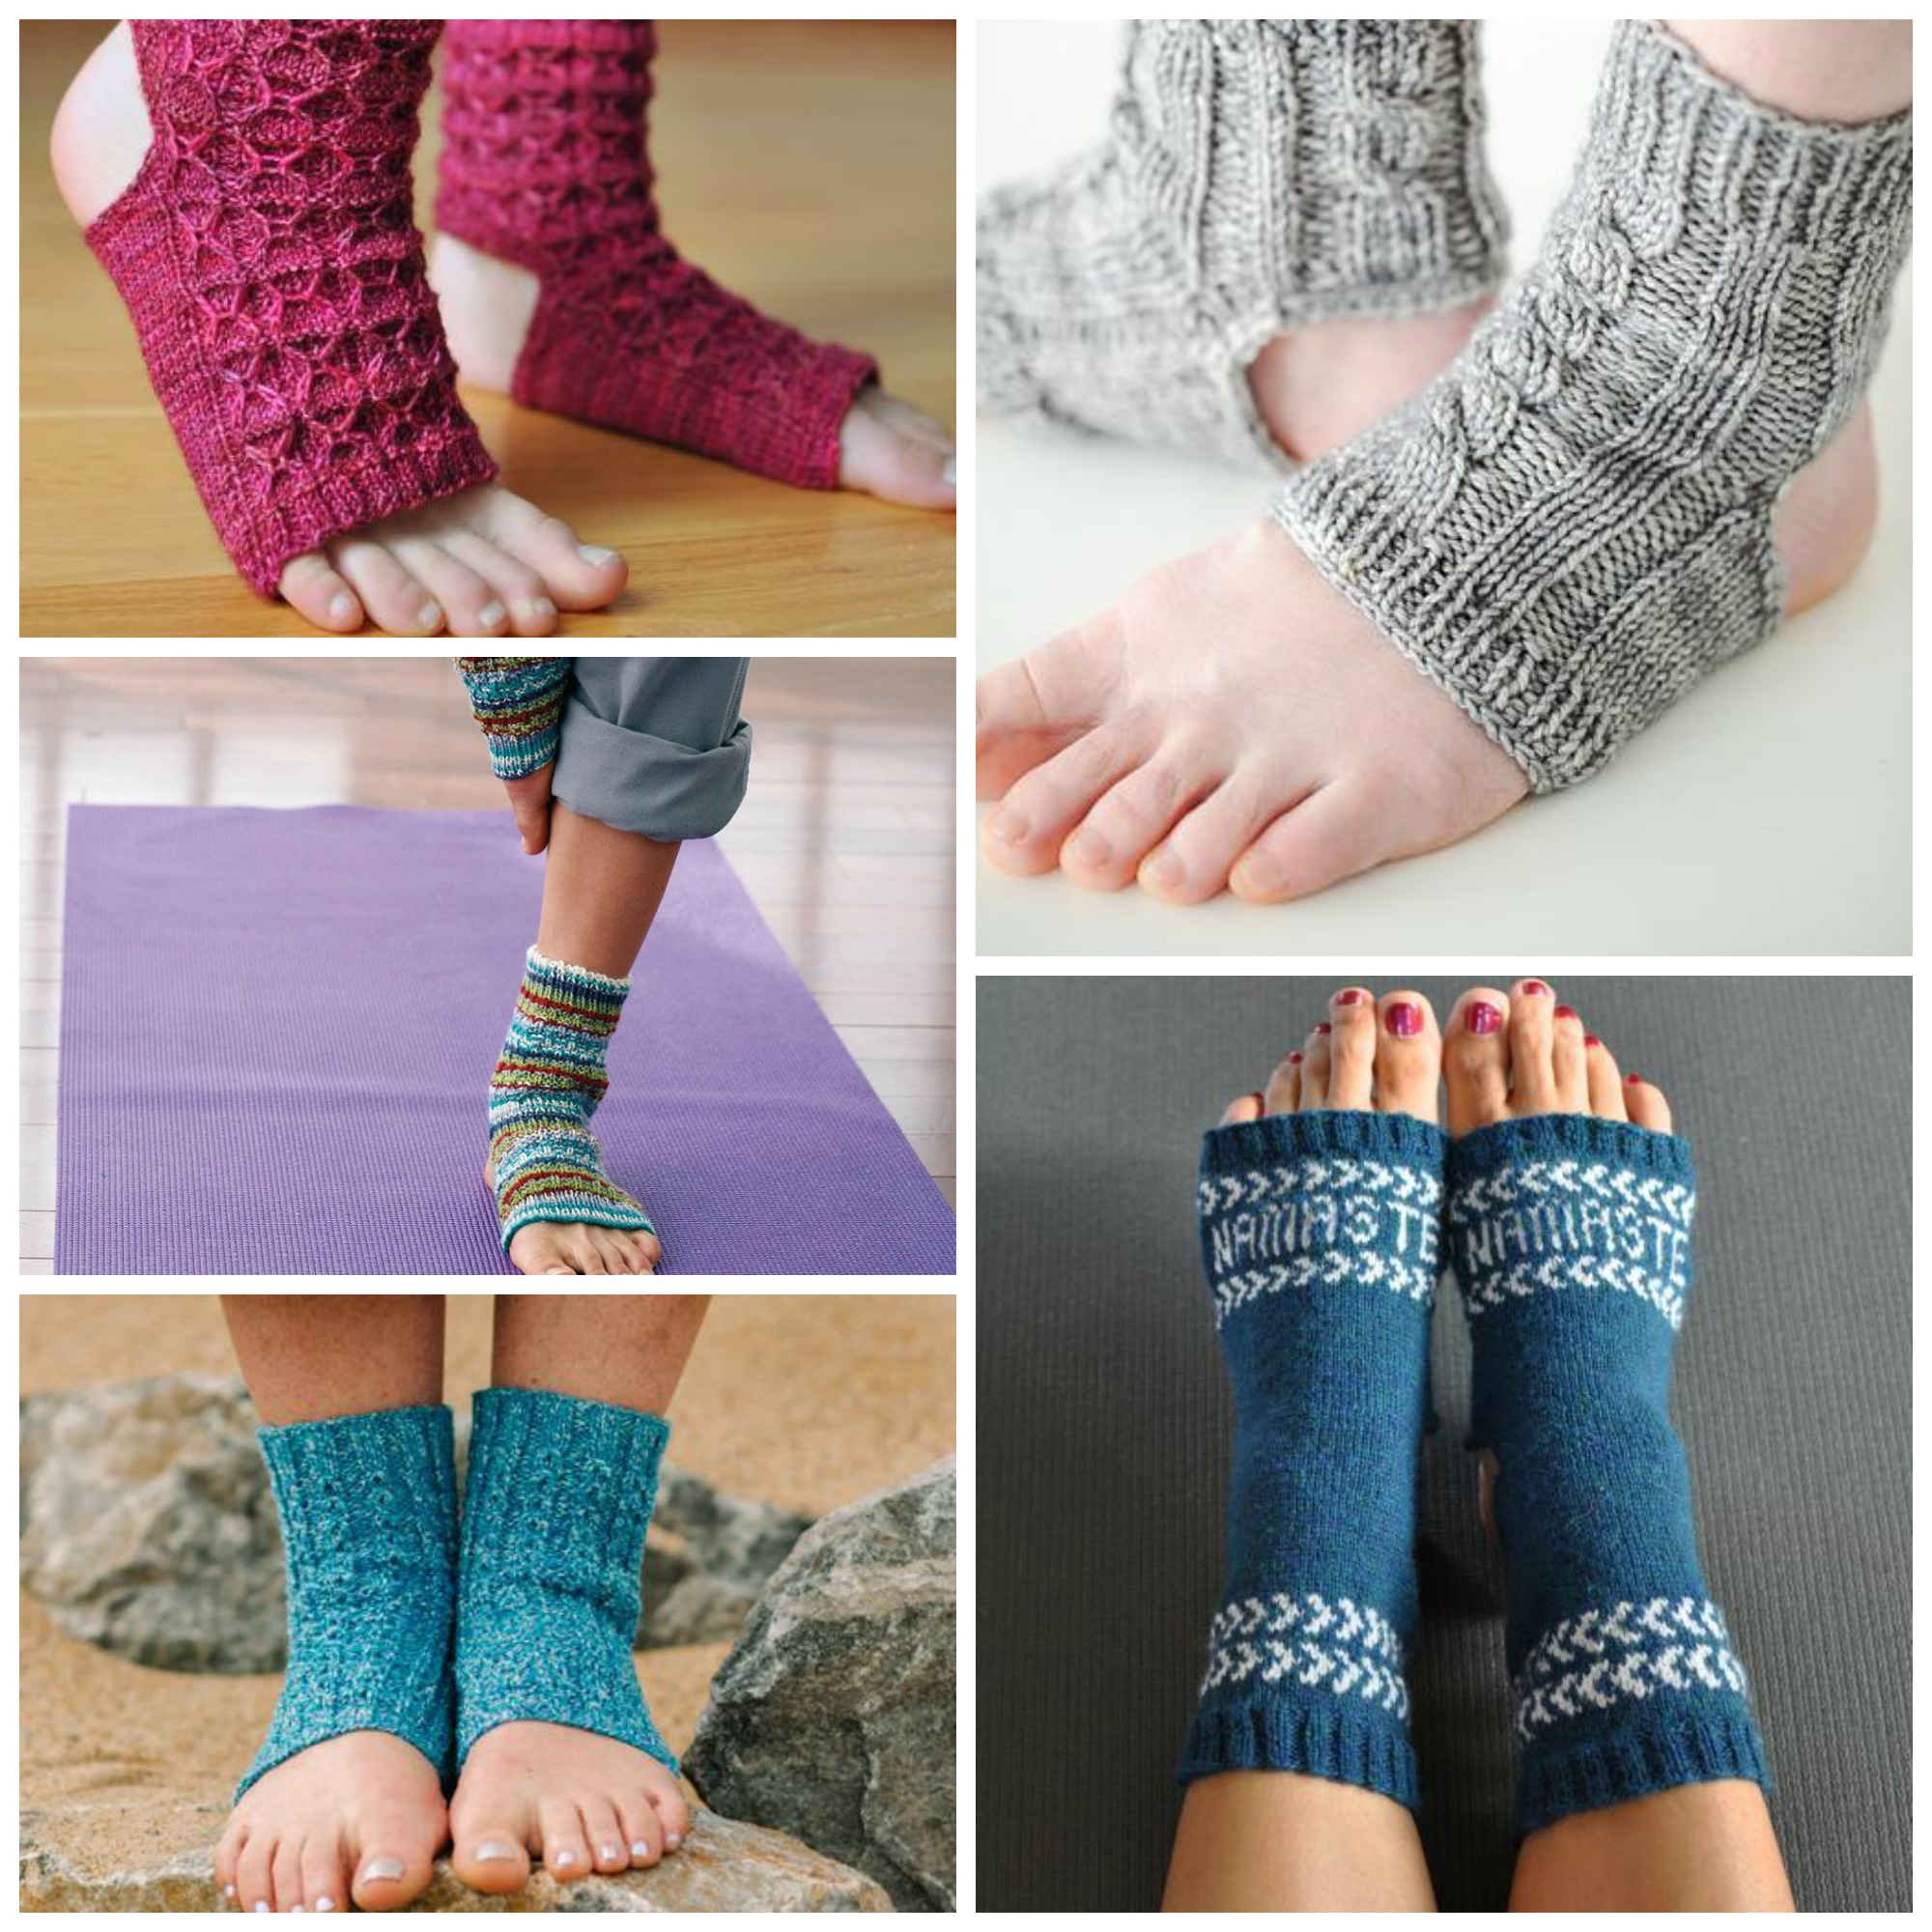 Knitting Patterns For Socks 10 Yoga Socks Knitting Patterns